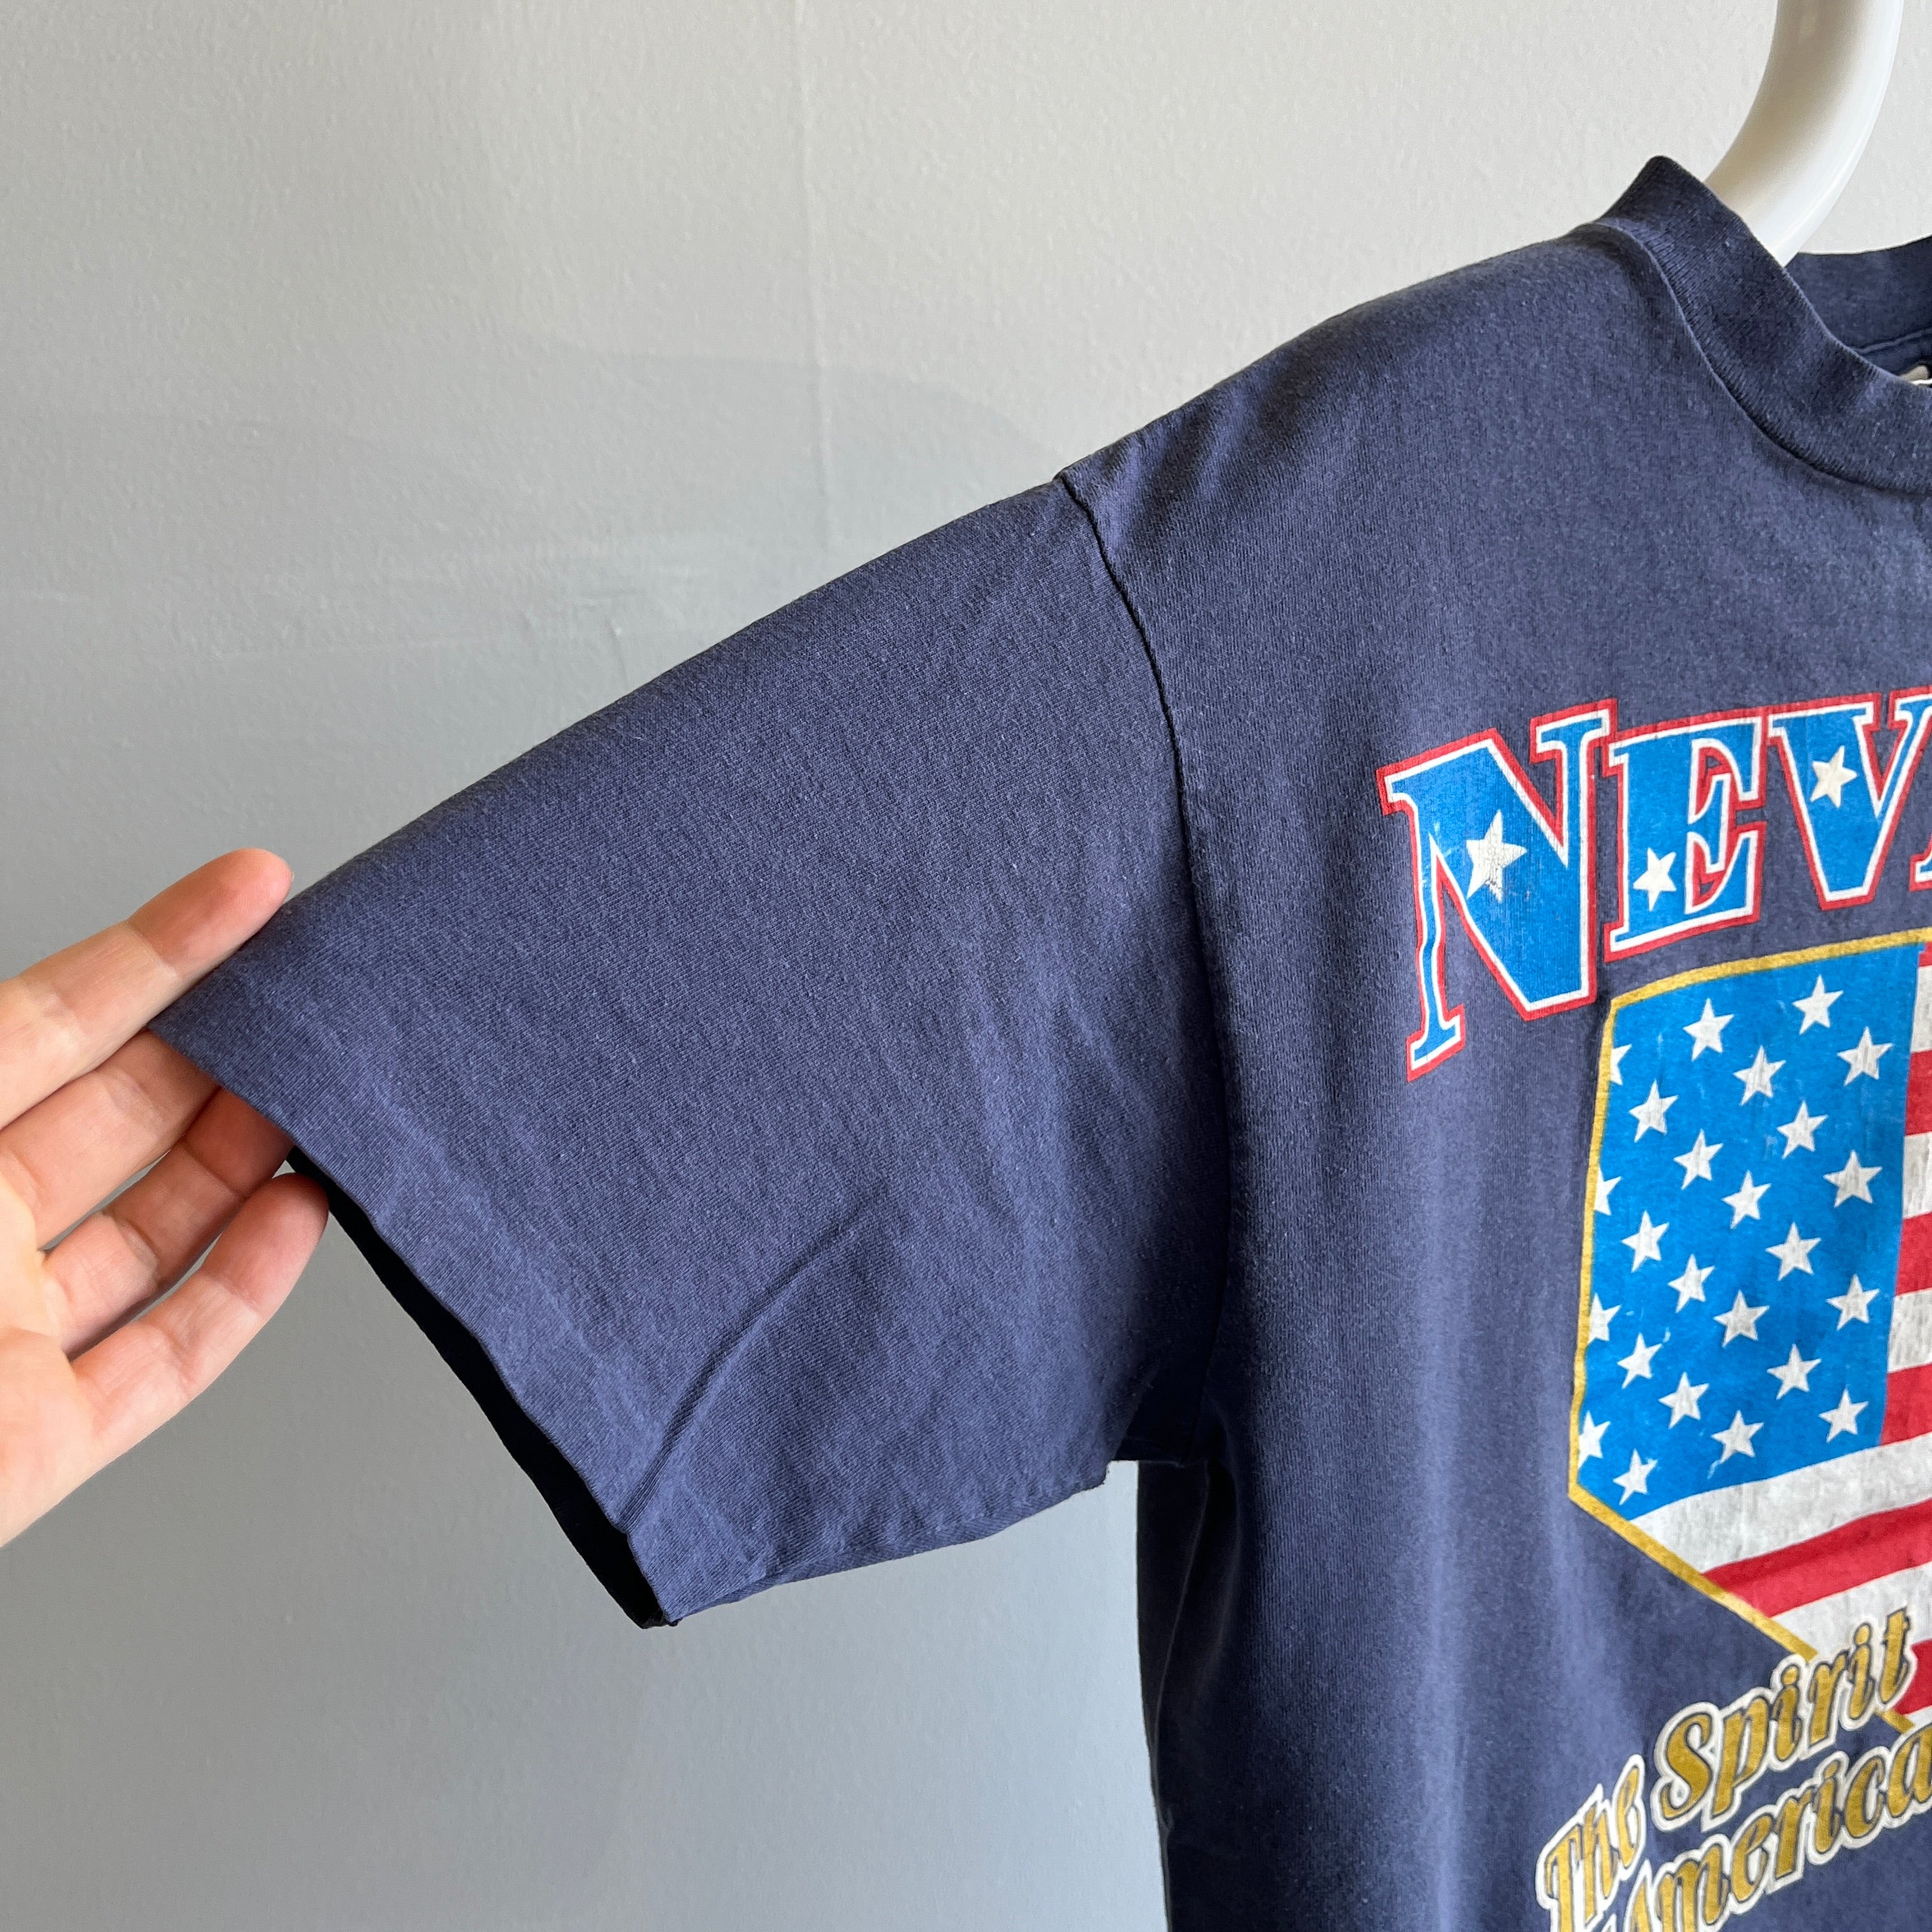 T-shirt Nevada Super Fan Tourist des années 1980